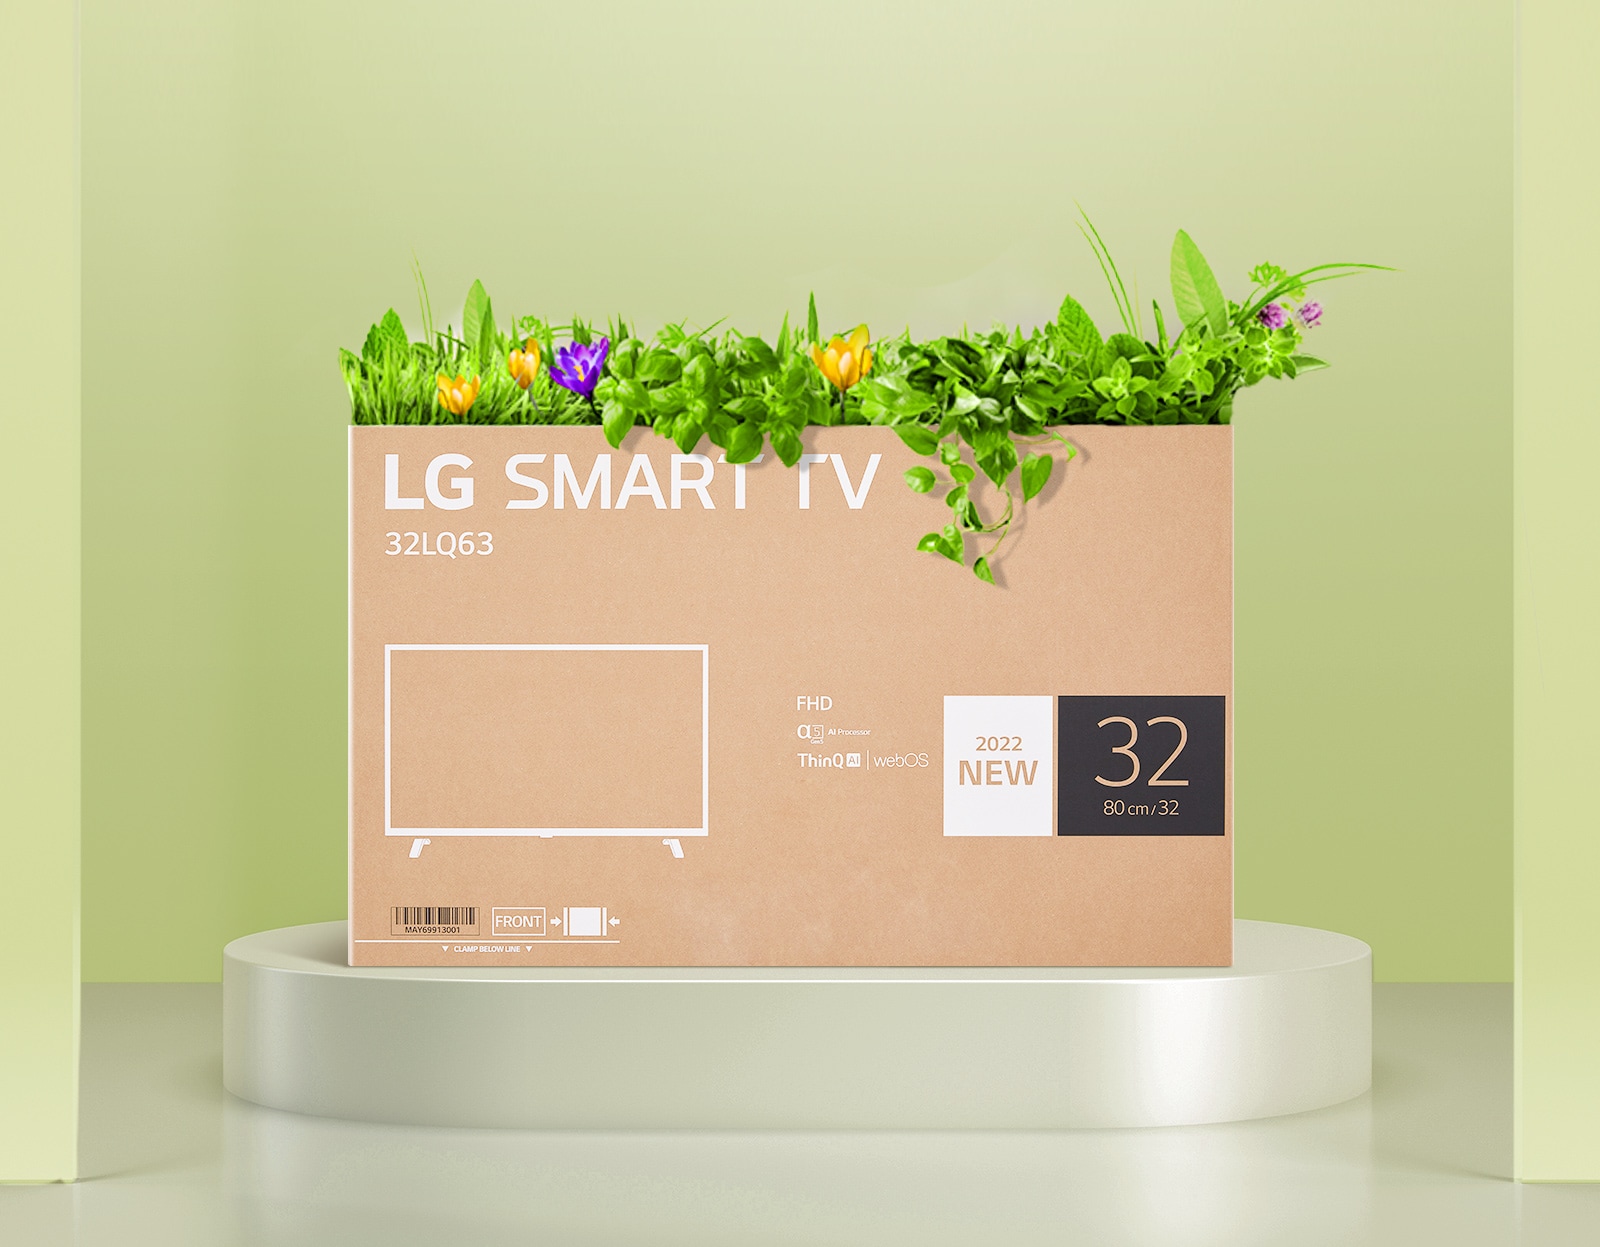 הקרטון הממוחזר המשמש כאריזה של מסך LG FHD מוצג וצומחים ממנו פרחים.